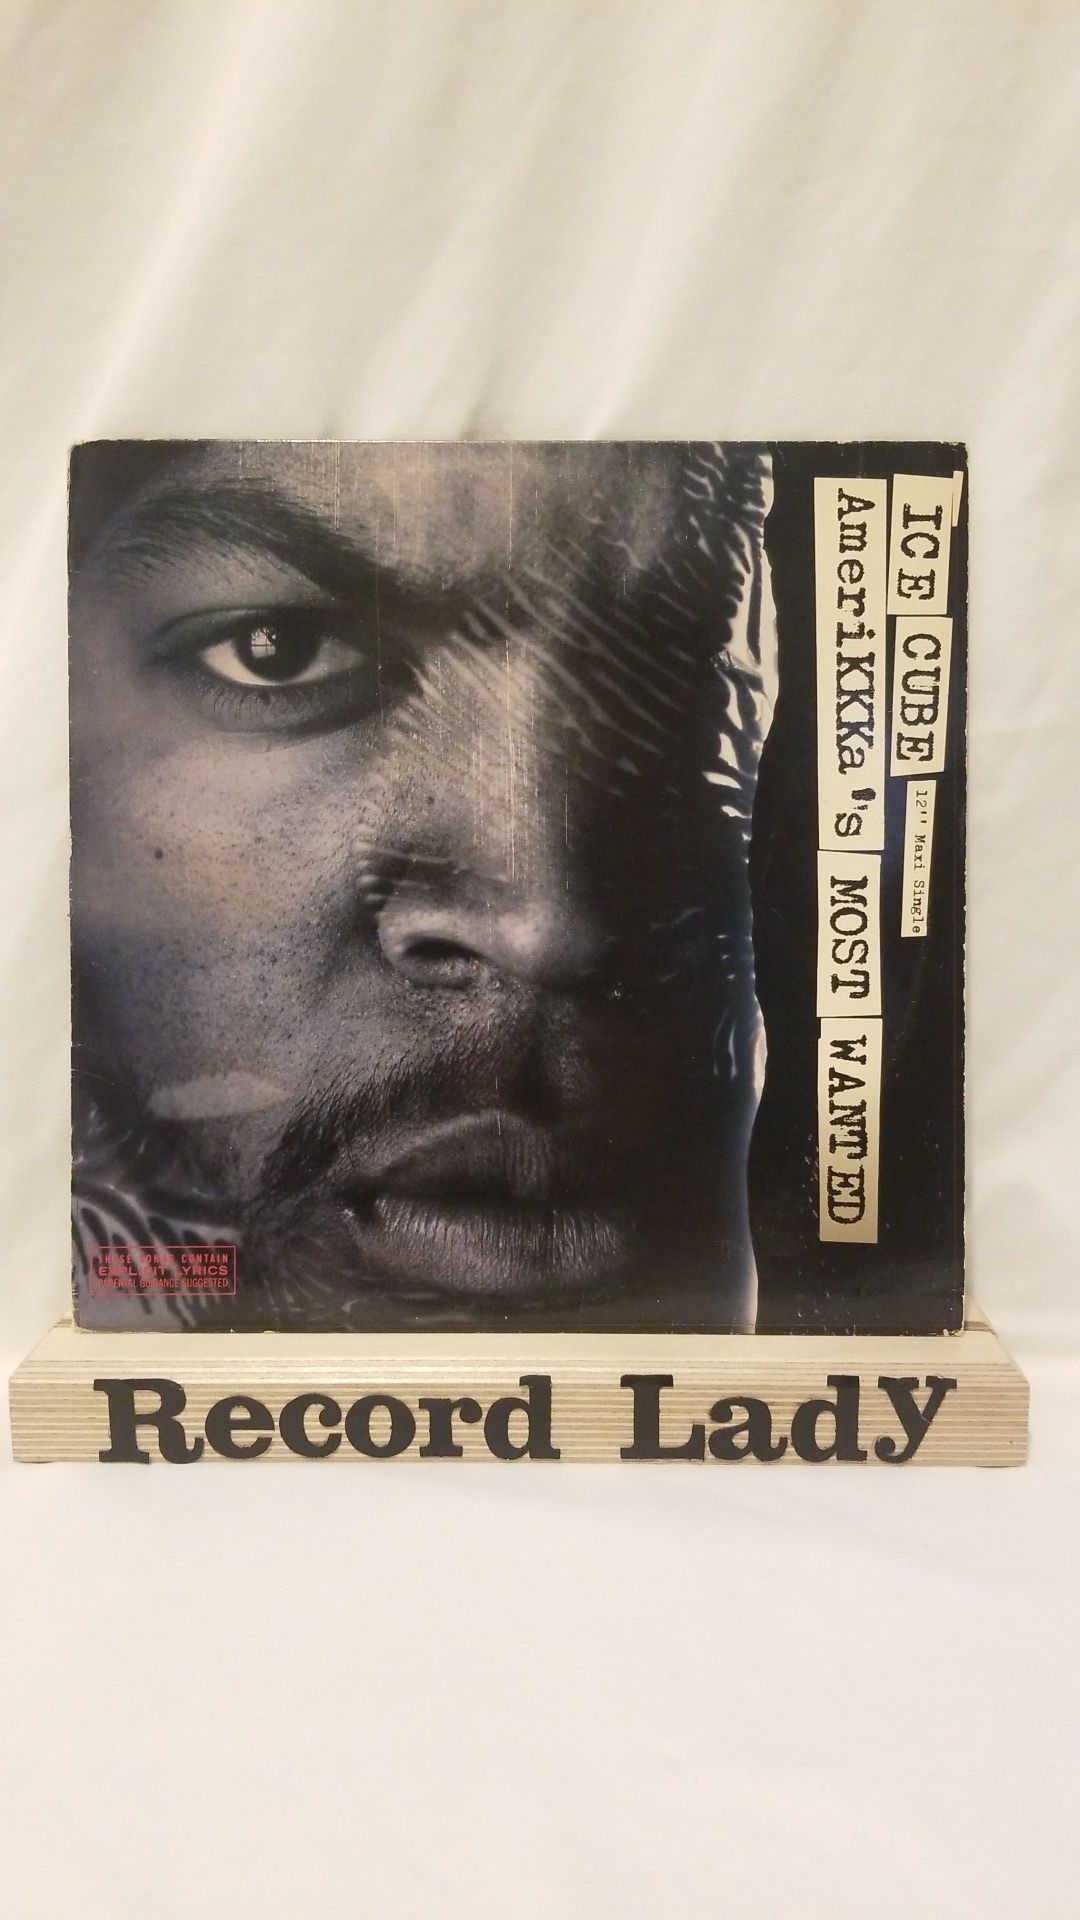 Ice Cube "Amerikkka's Most Wanted" vinyl record hip hop/ rap